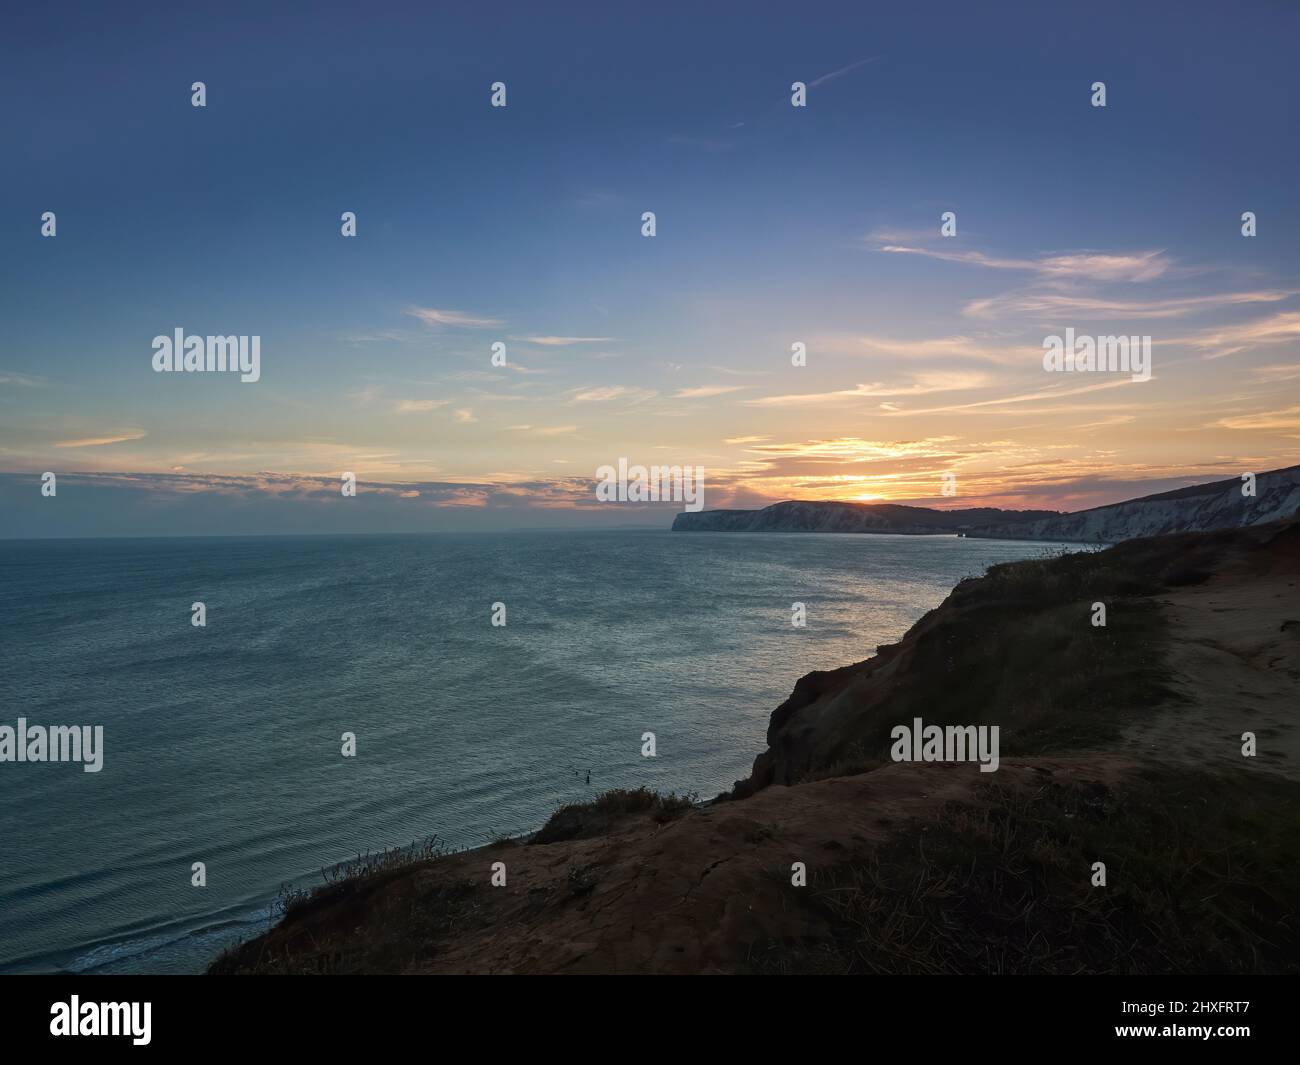 Un radioso e glorioso tramonto sul mare e sulle promontori di una scogliera di gesso dell'Isola di Wight, con i ricchi raggi dorati riflessi nelle acque testurizzate. Foto Stock